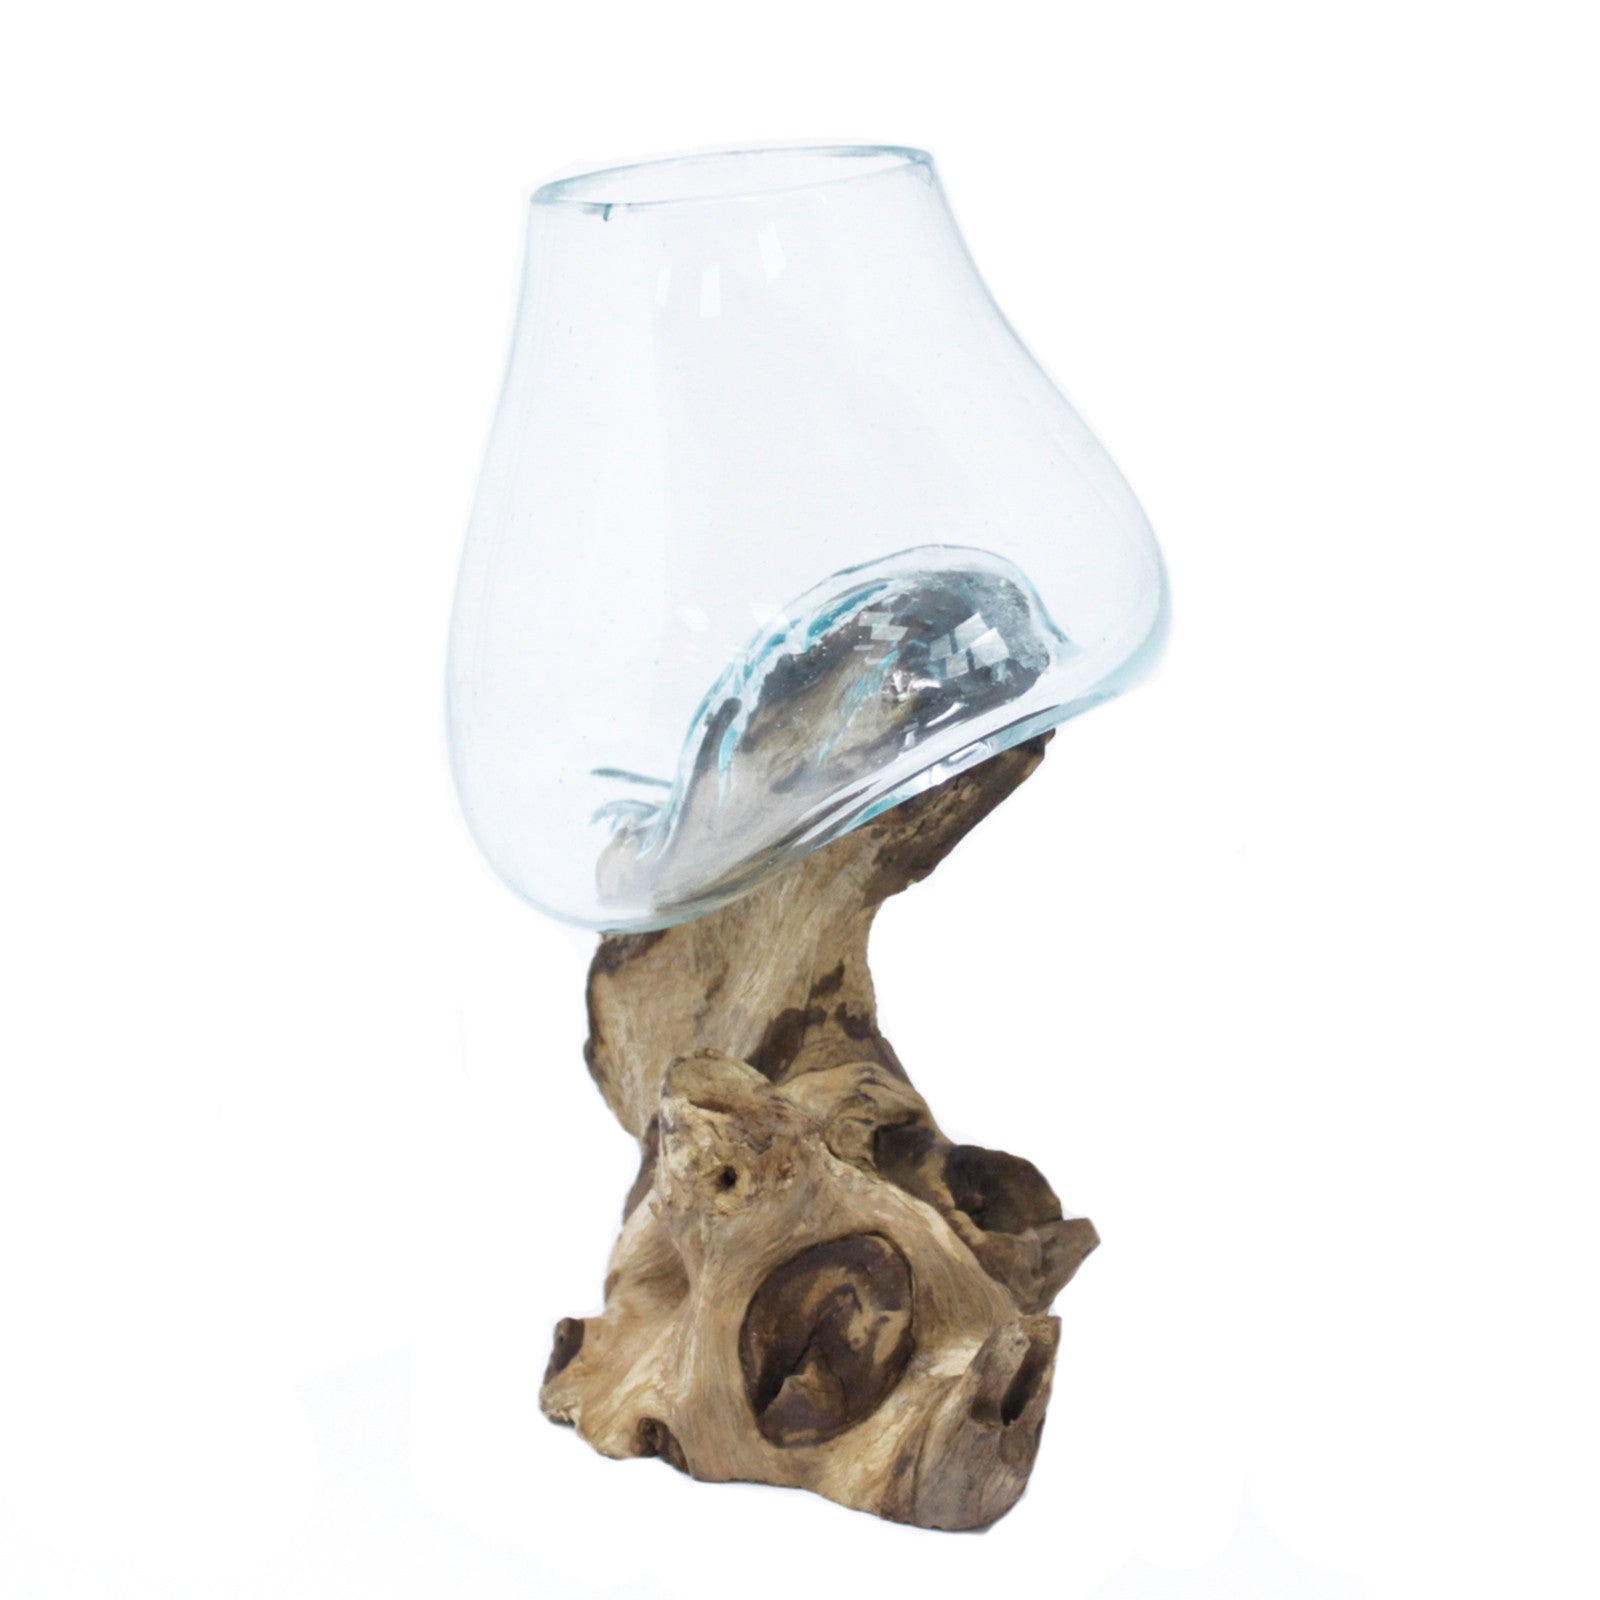 Geschmolzenes Glas - Schale Medium auf Holz - BEPANO